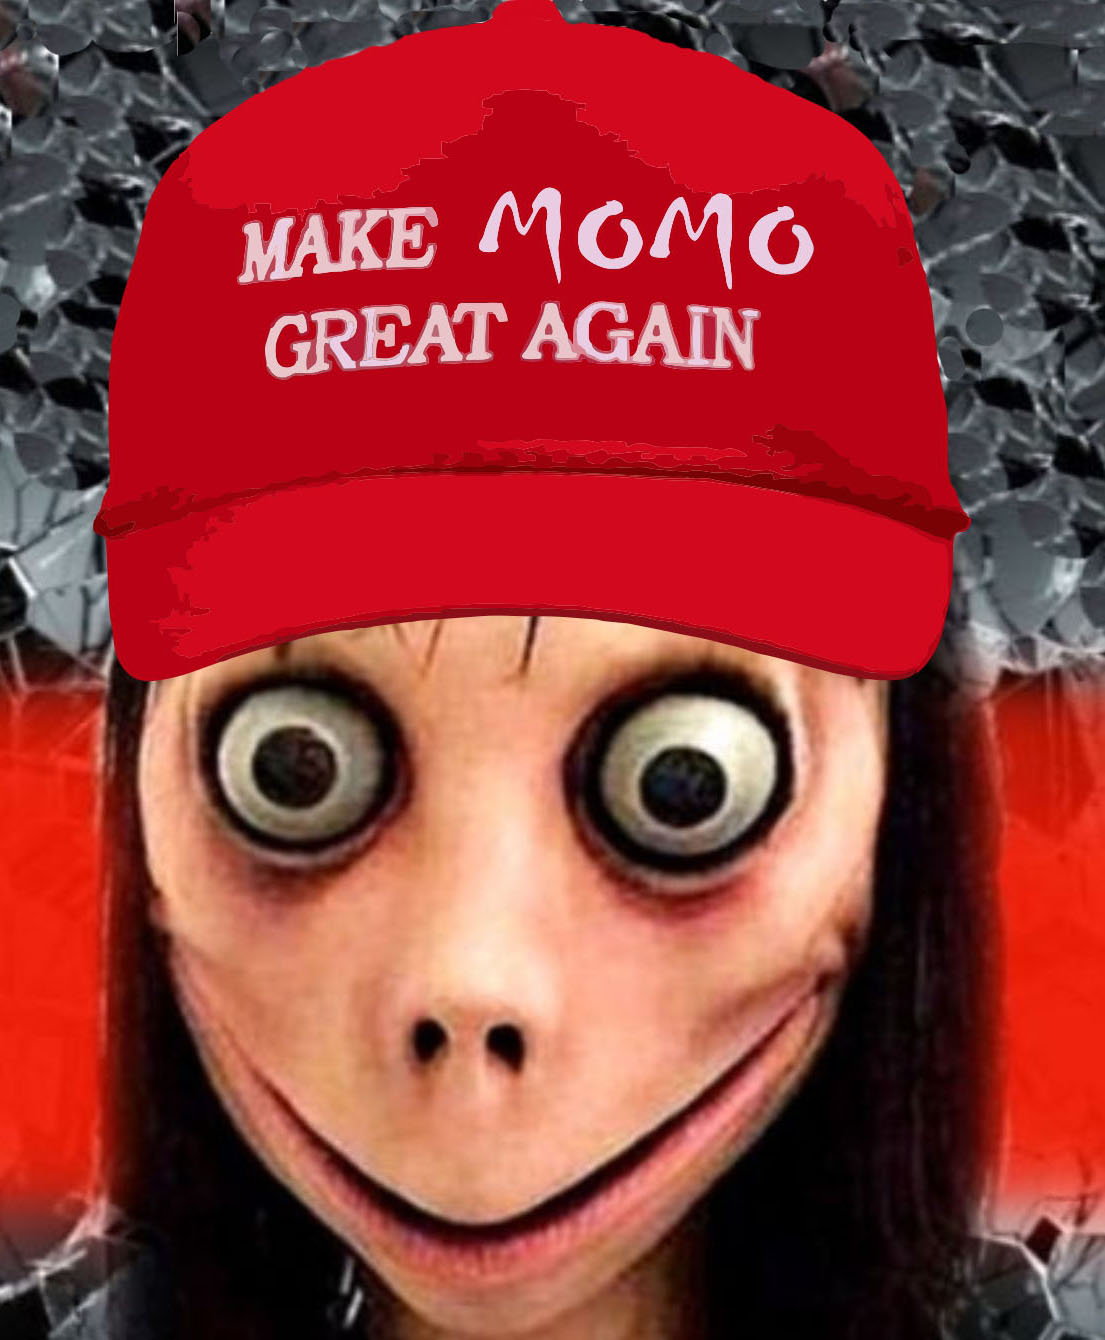 "Make Momo Great Again" by Mashishkaa